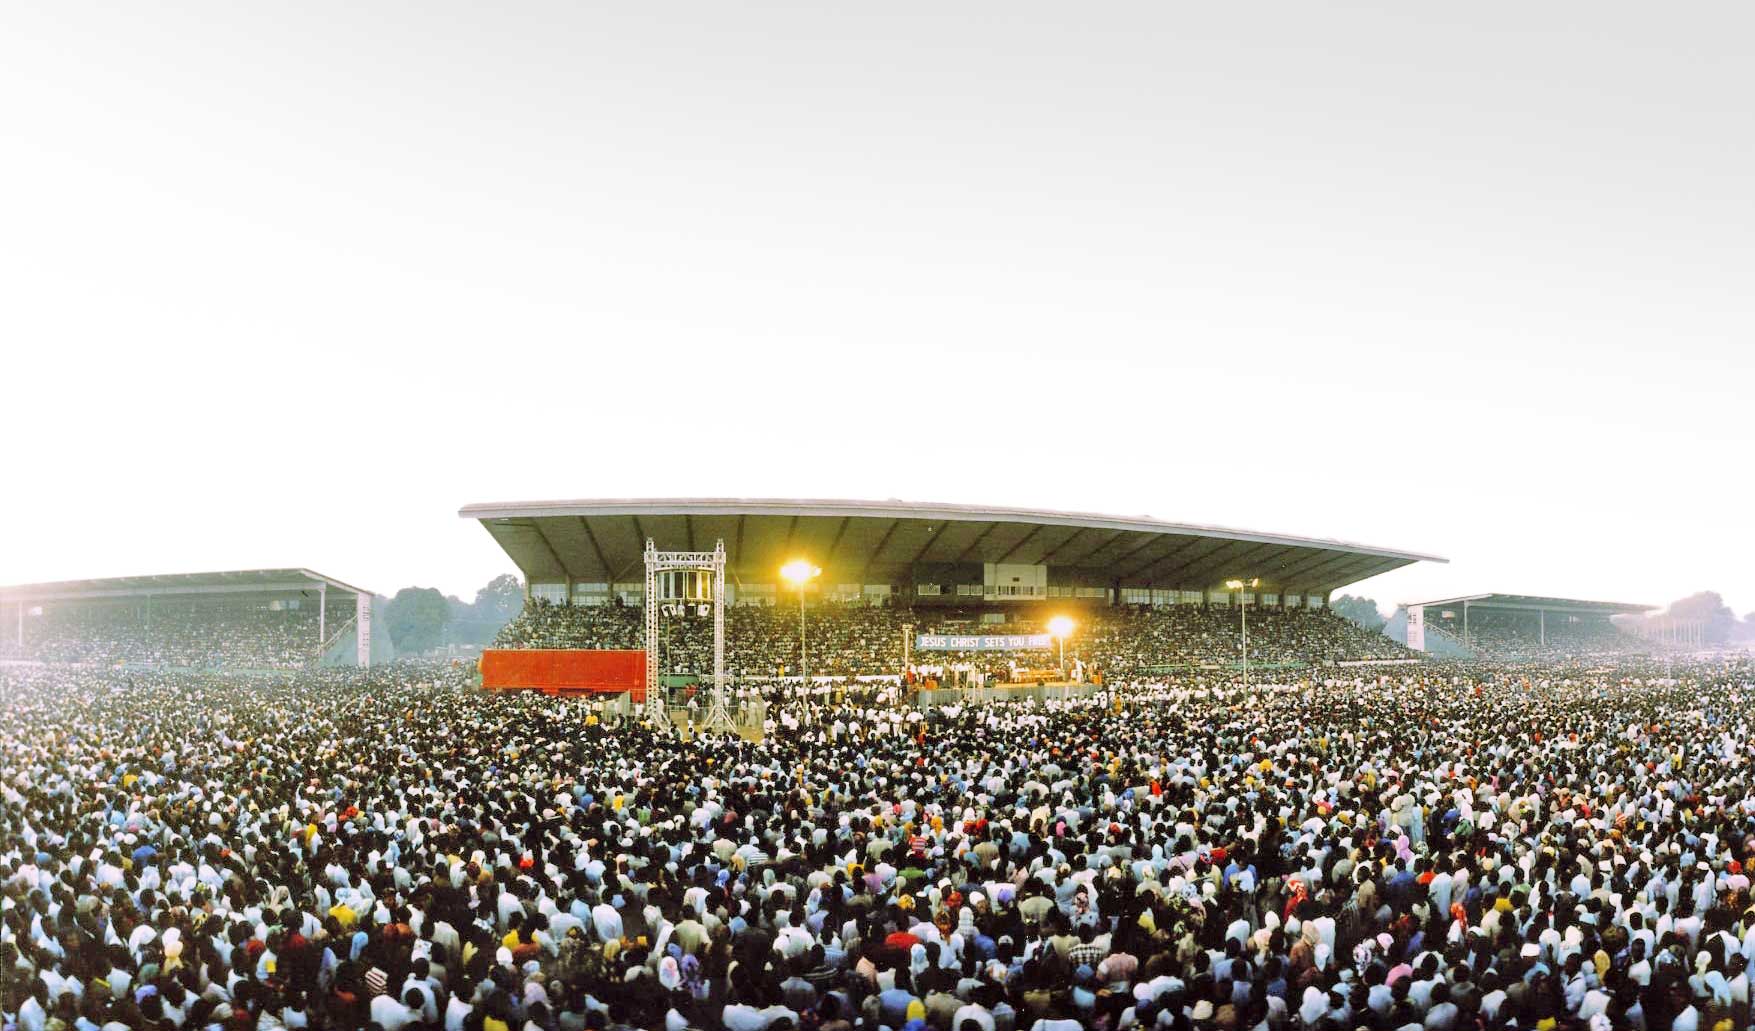 Die CfaN-Kampagne von 1990 in Kaduna, Nigeria, zog 500.000 Menschen an, die das Evangelium hören wollten.